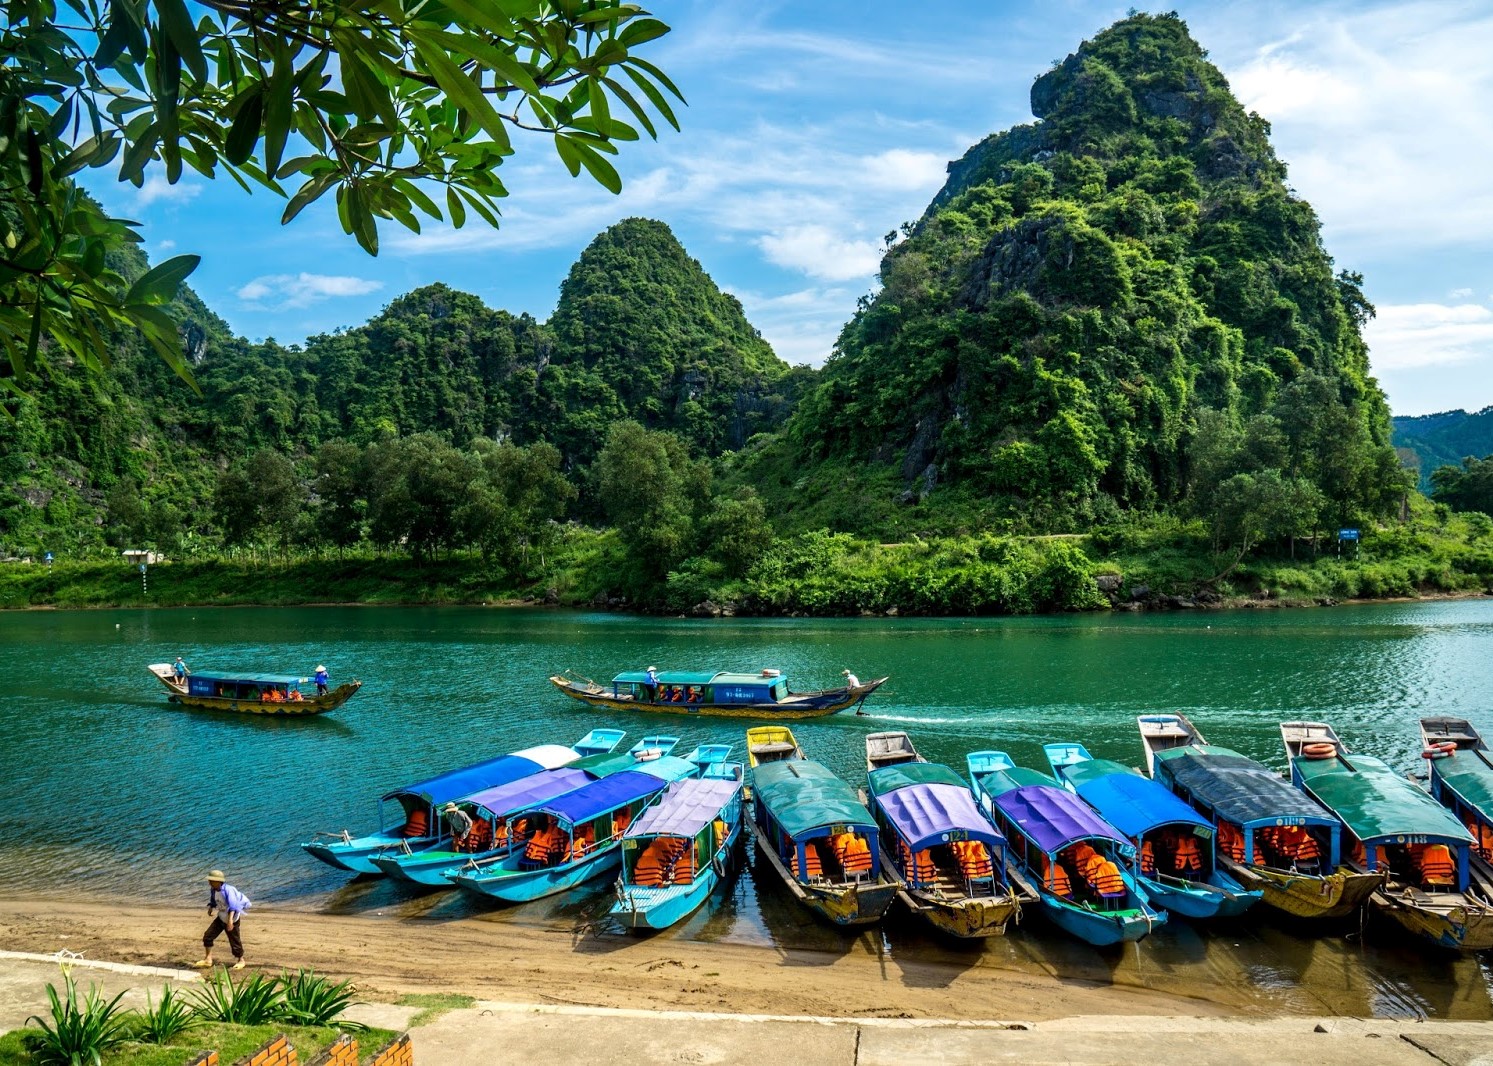 Вьетнам, фантьет: фото, подробная информация о городе, отзывы туристов